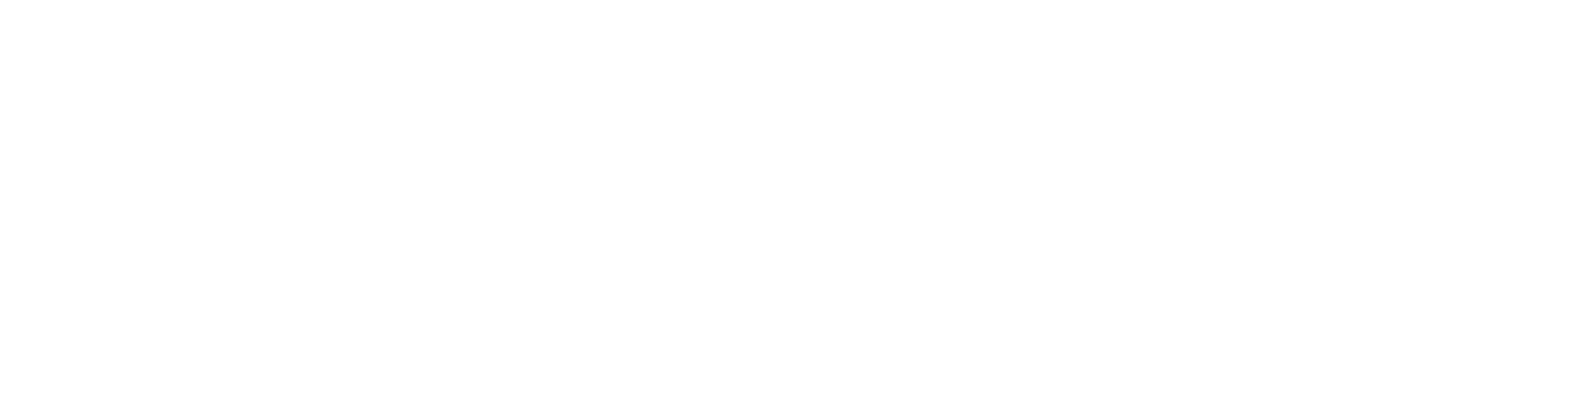 Ventas logo grand pour les fonds sombres (PNG transparent)